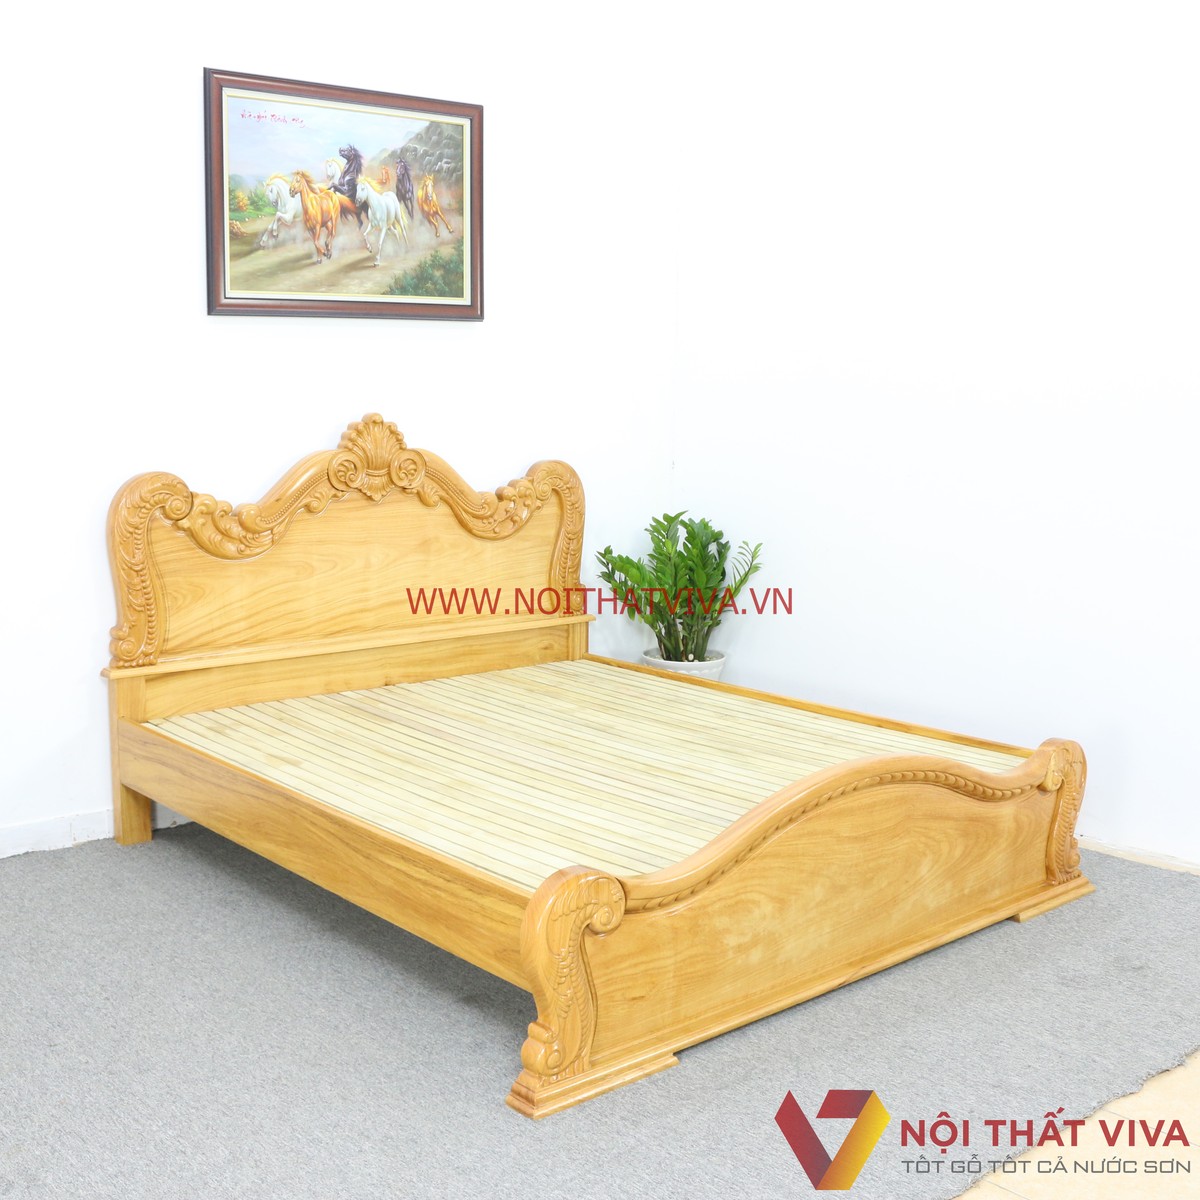 Được làm từ gỗ tự nhiên chắc chắn và đẹp mắt, giường ngủ gỗ tự nhiên đẹp sẽ giúp bạn trang trí phòng ngủ của mình với phong cách đơn giản và gần gũi với thiên nhiên. Hãy xem hình ảnh để cảm nhận sự ấm áp mà một chiếc giường ngủ gỗ tự nhiên đem lại.